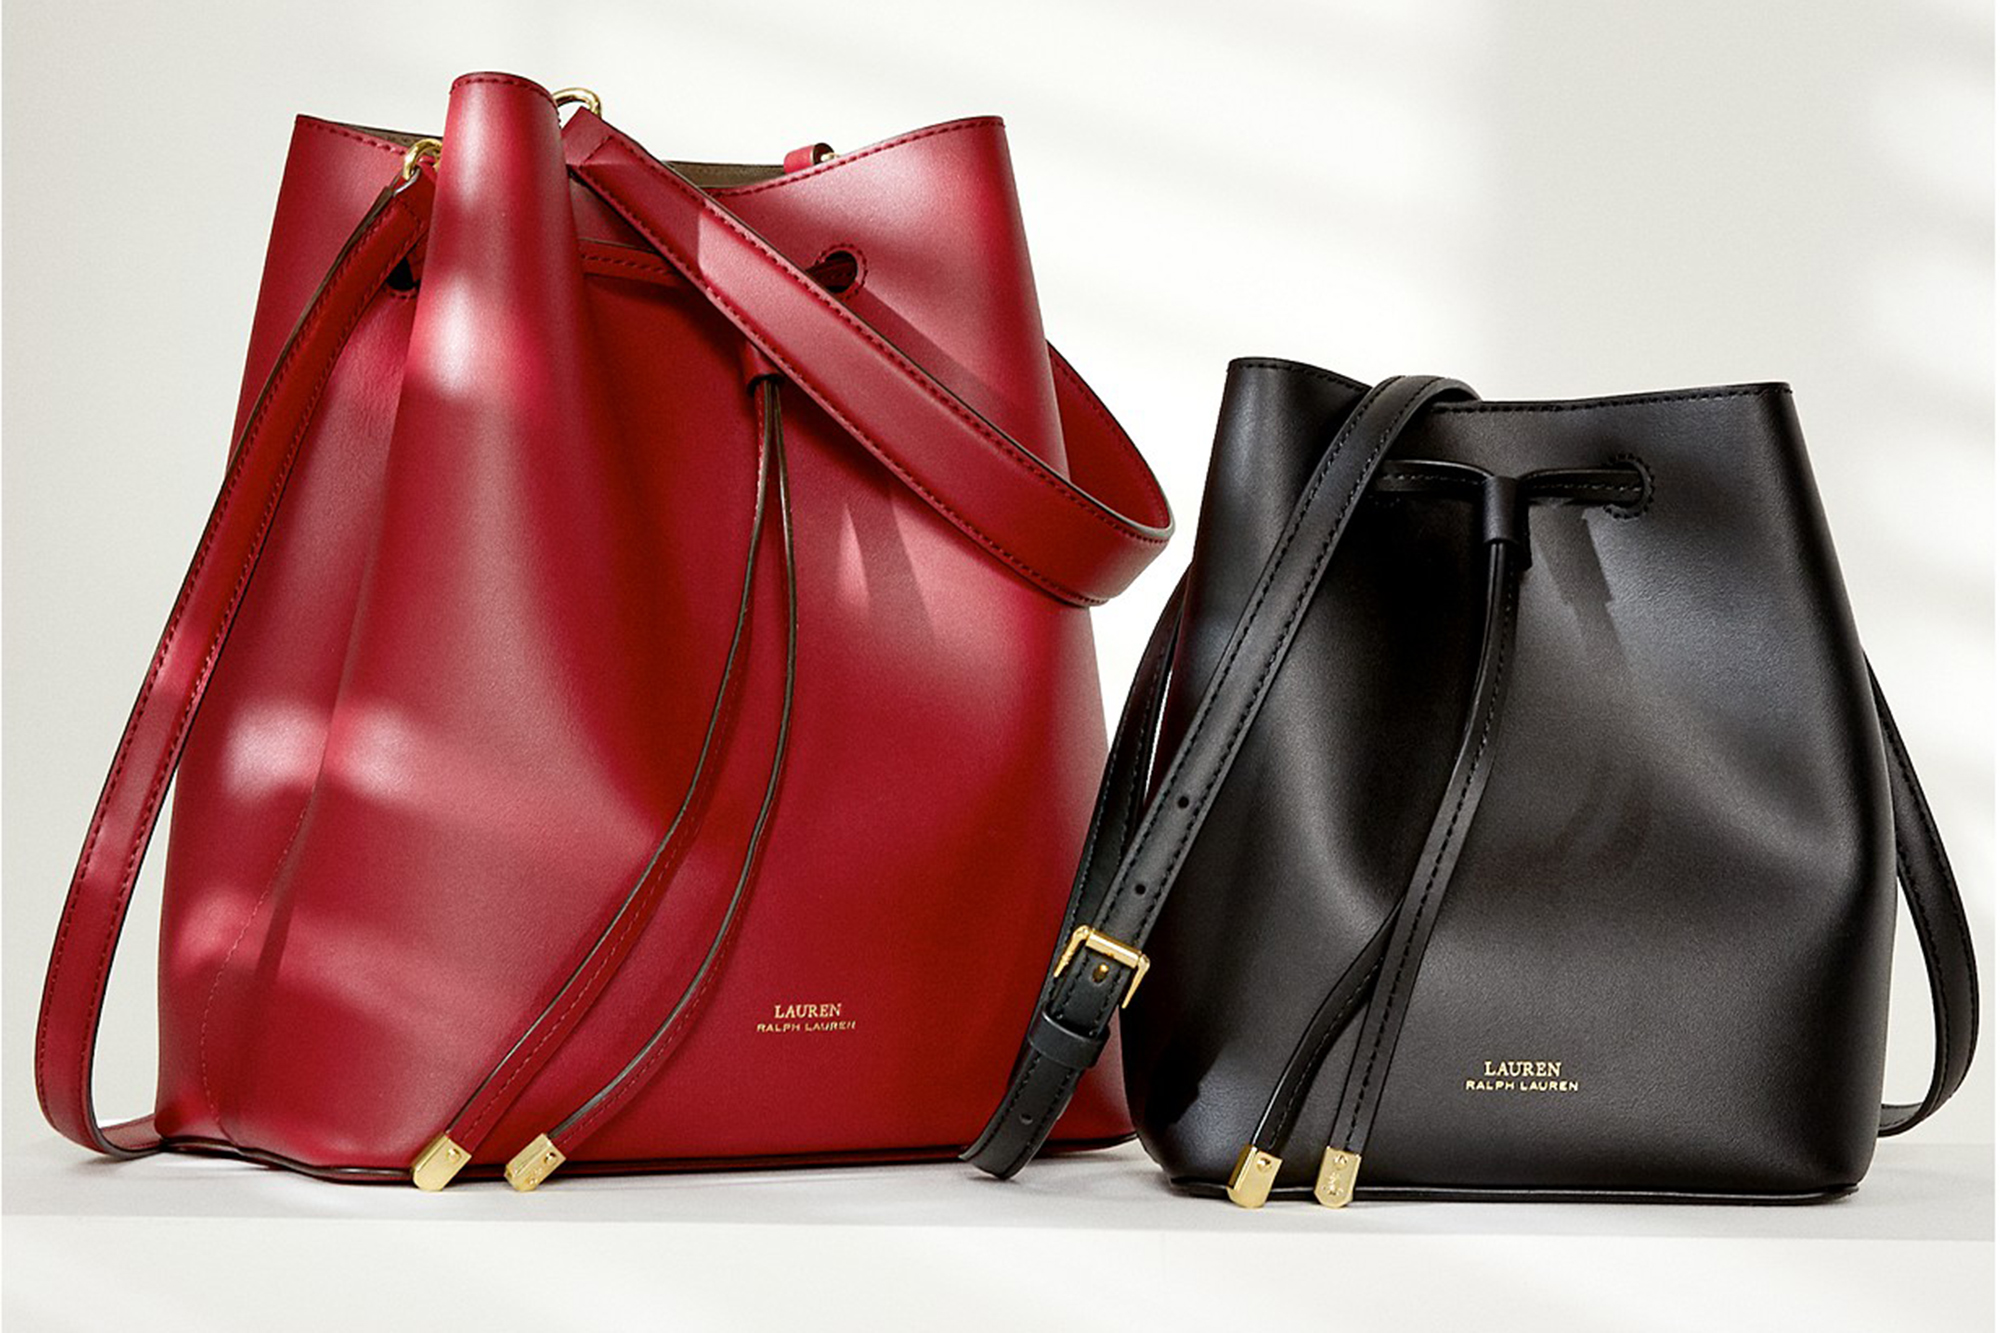 Actualizar 51+ imagen ralph lauren handbags on sale at macy’s